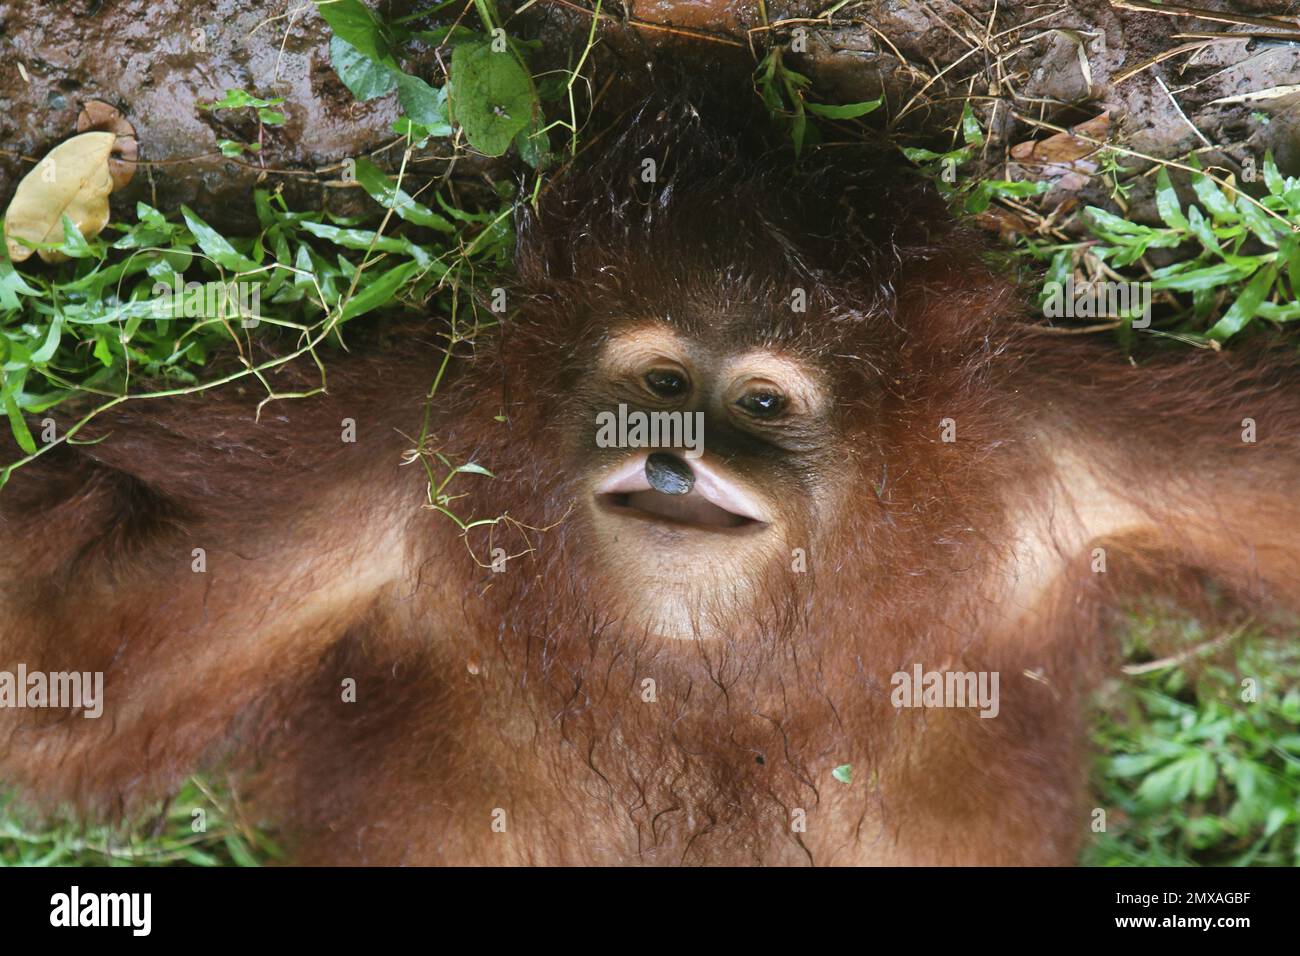 The orangutan Stock Photo